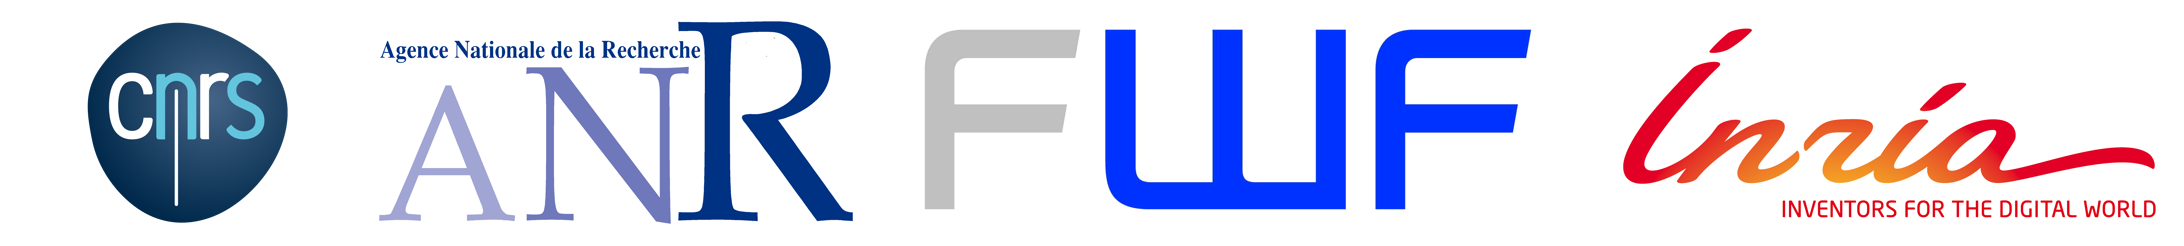 logo_banner